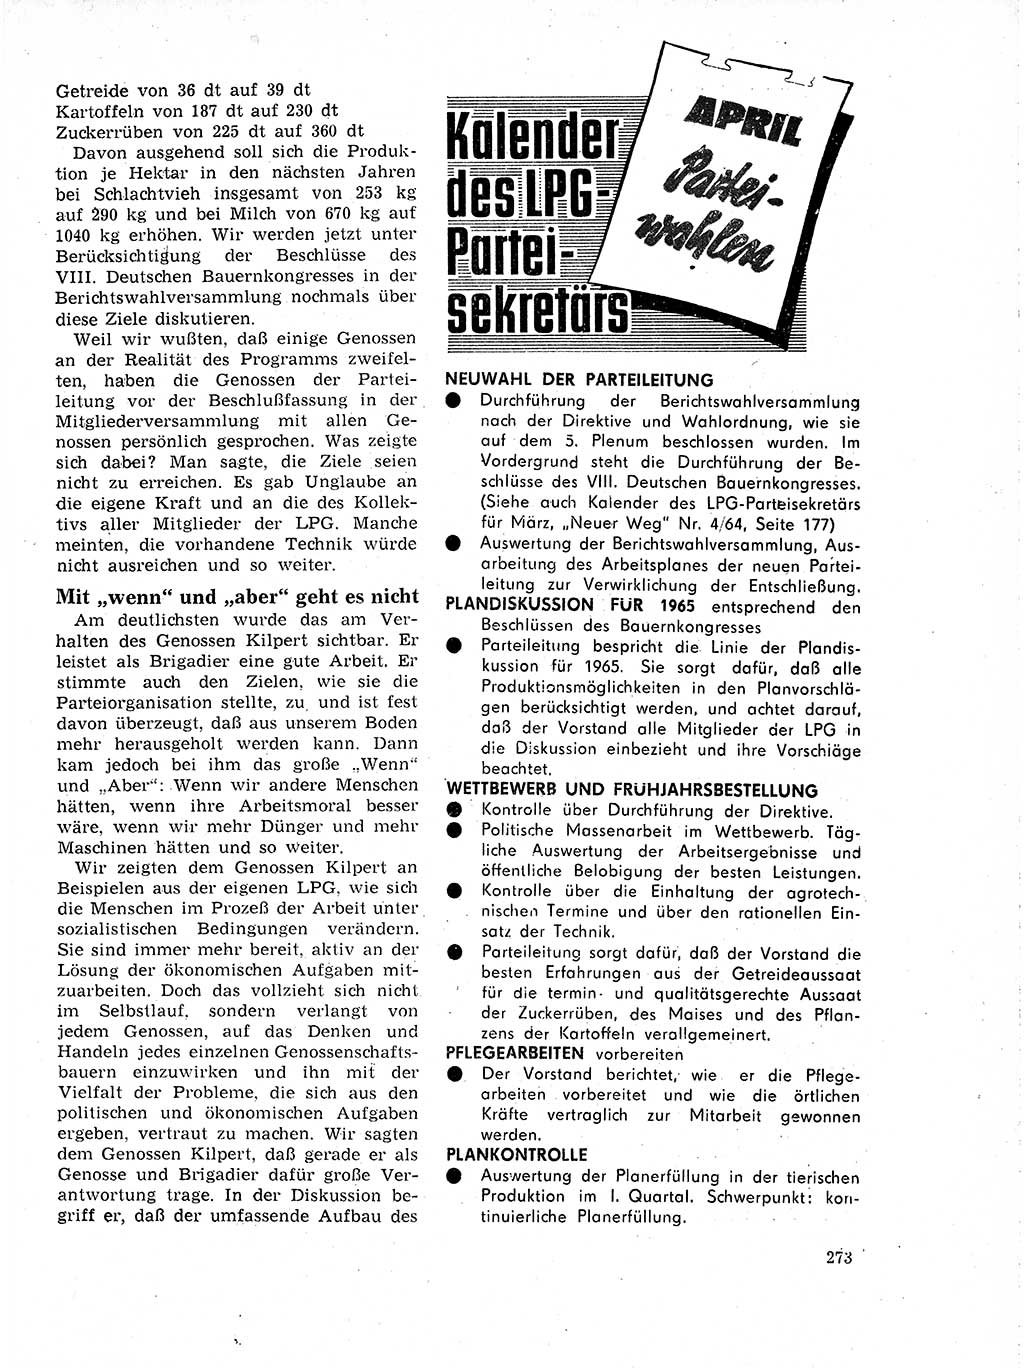 Neuer Weg (NW), Organ des Zentralkomitees (ZK) der SED (Sozialistische Einheitspartei Deutschlands) für Fragen des Parteilebens, 19. Jahrgang [Deutsche Demokratische Republik (DDR)] 1964, Seite 273 (NW ZK SED DDR 1964, S. 273)